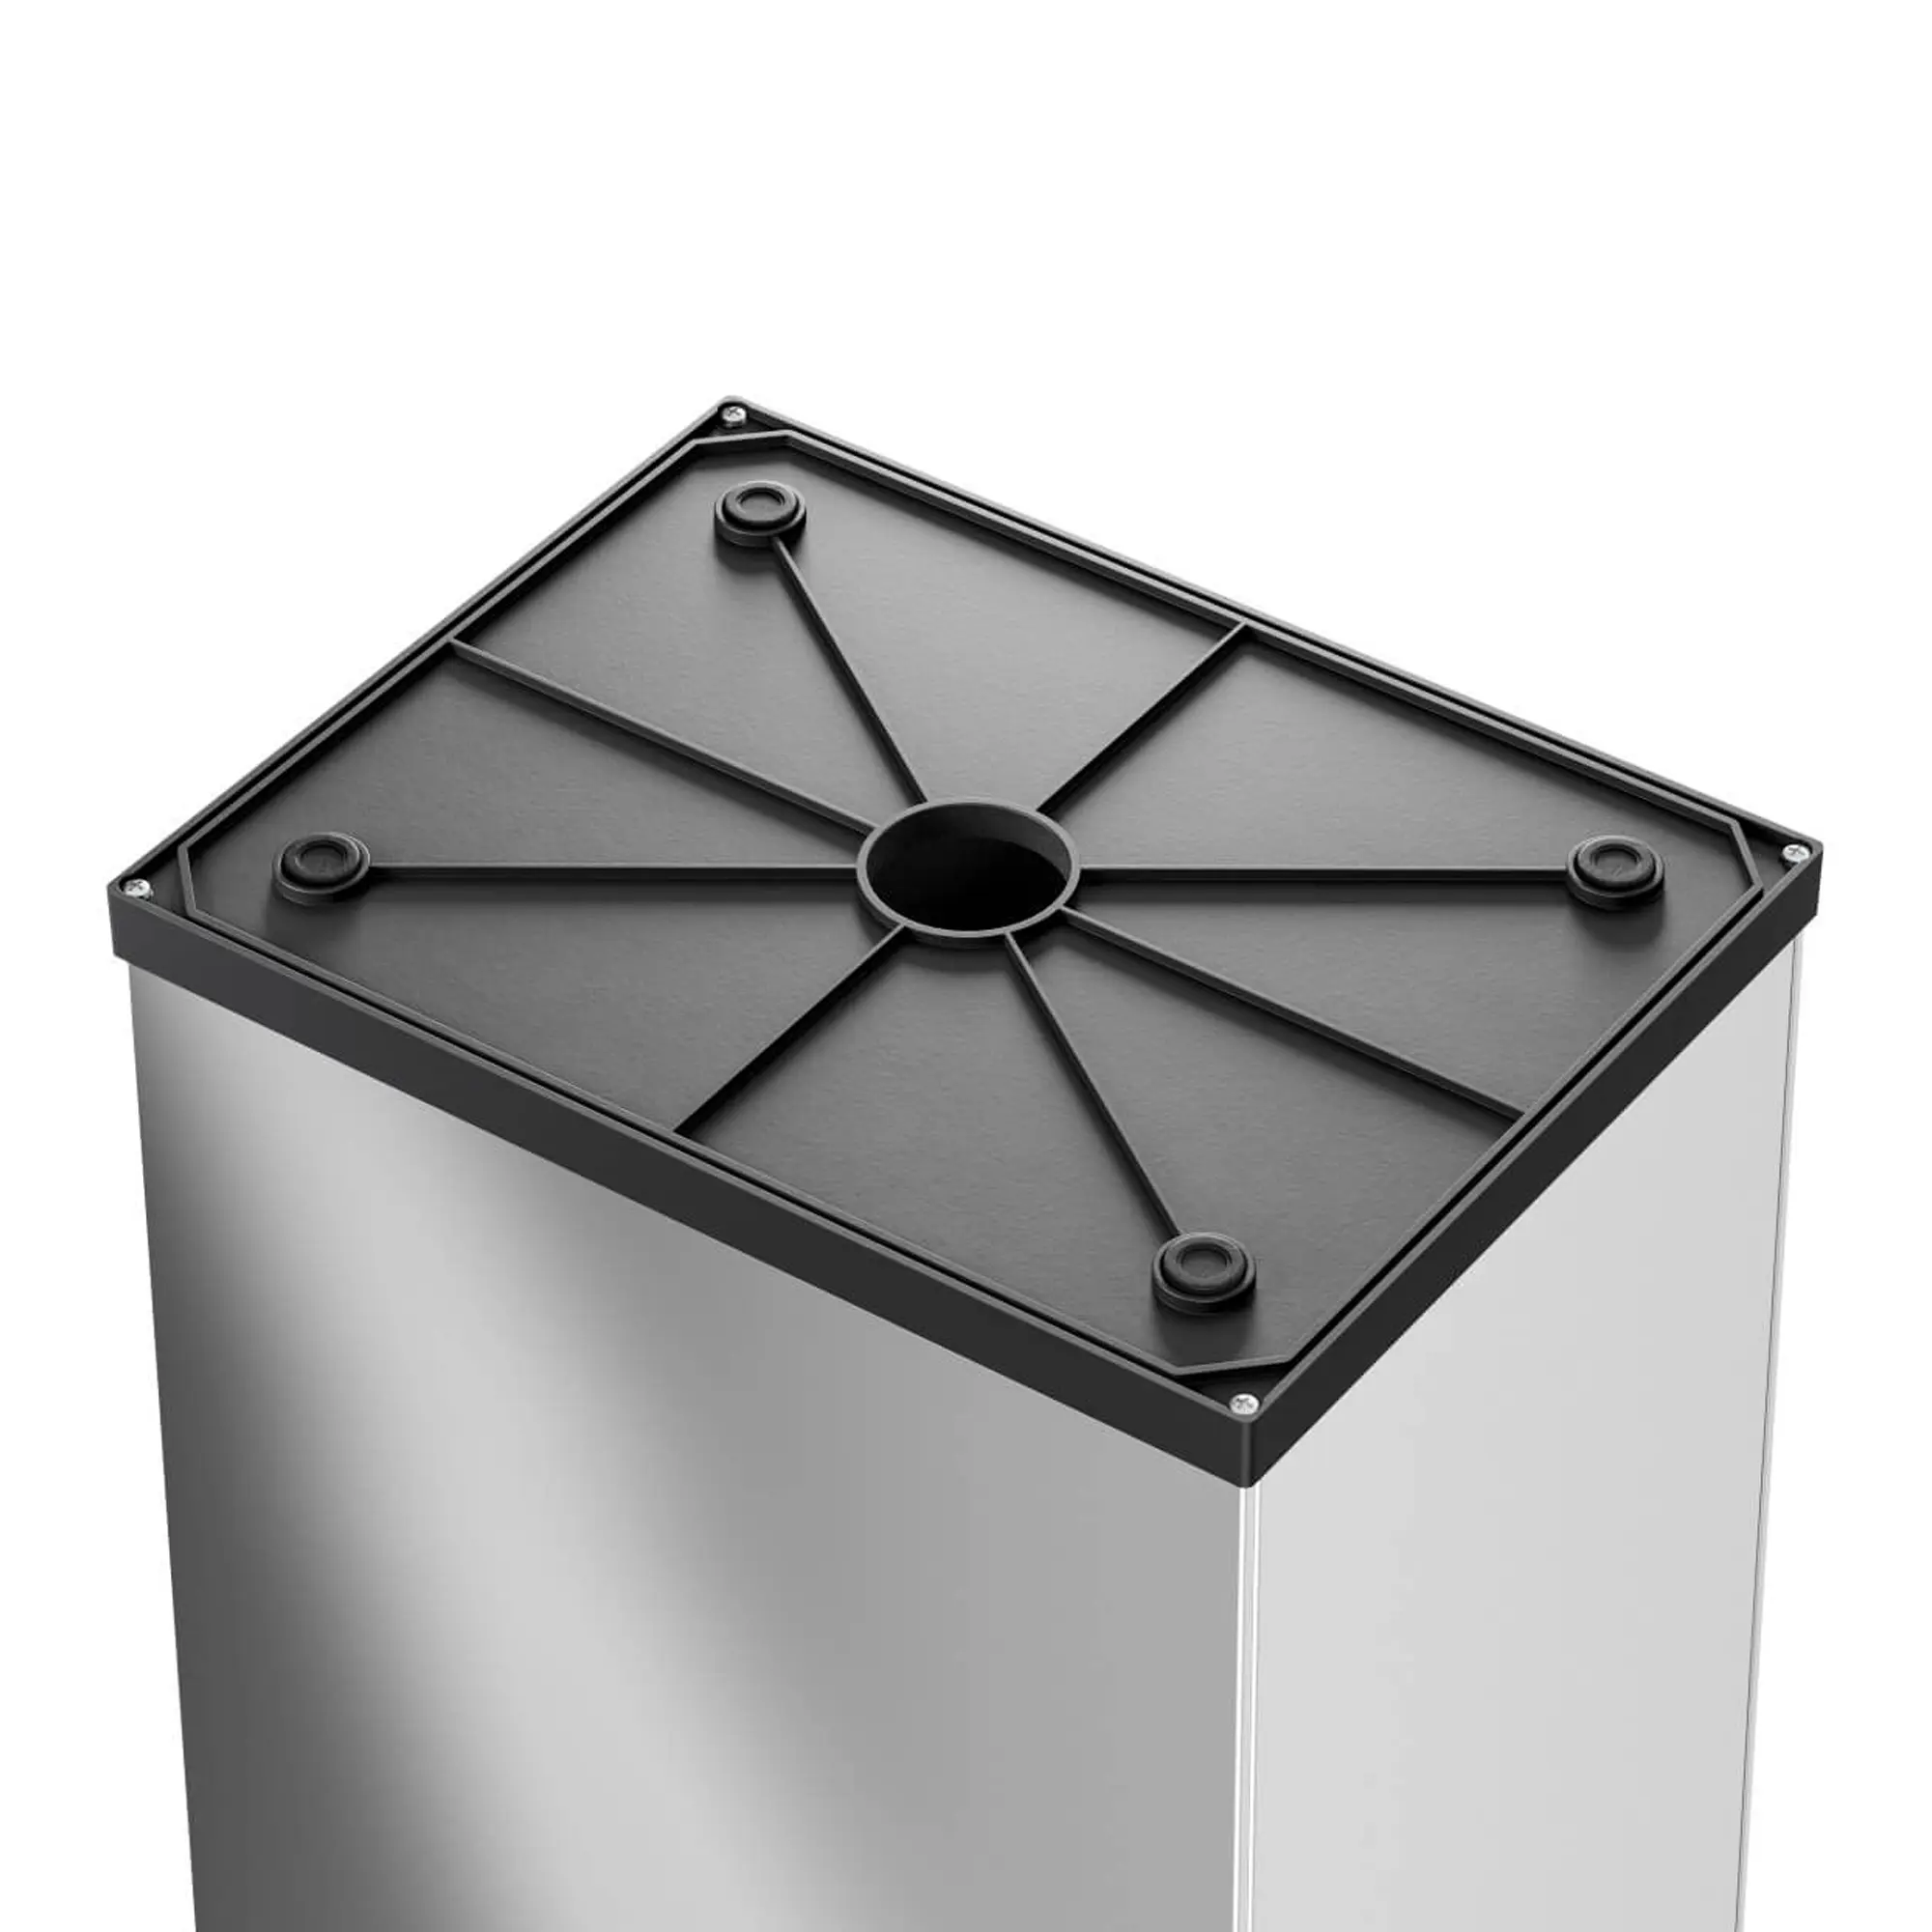 Hailo Großraum-Abfallbox Big-Box Swing XL 52 Liter weiß anti rutsch Füße  0860-231